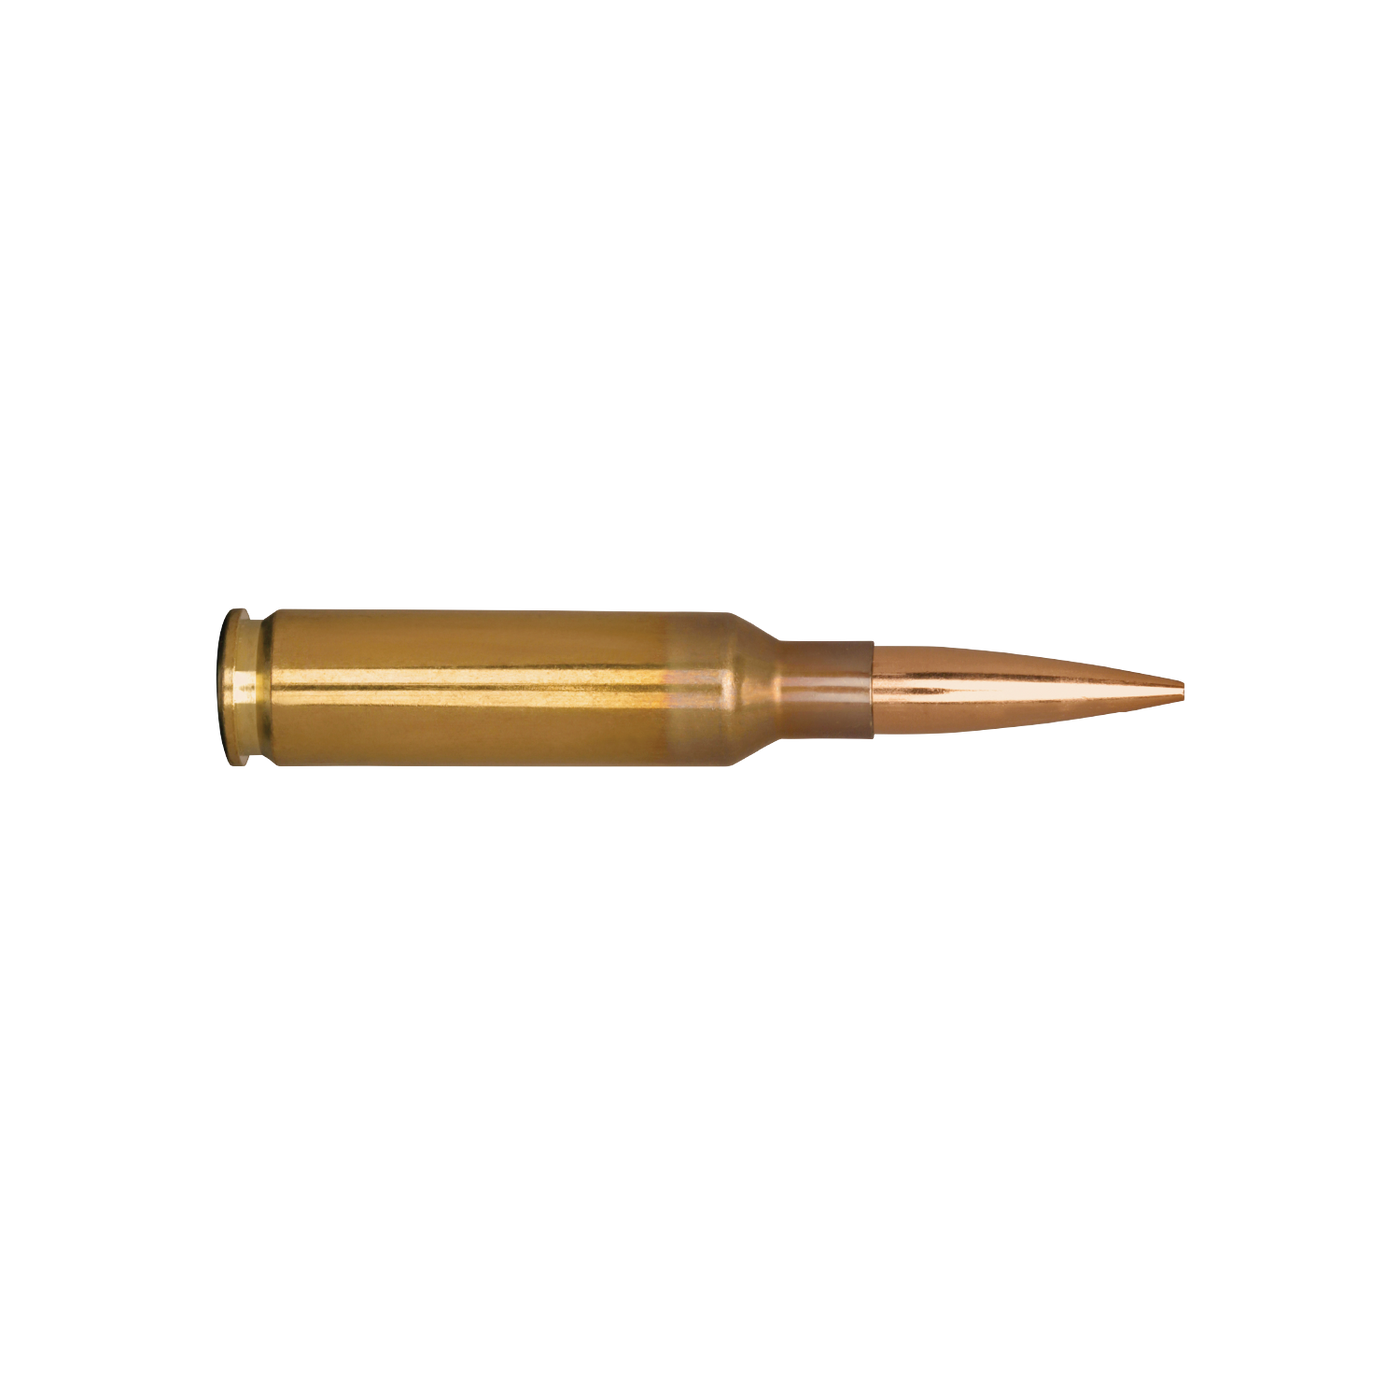 Berger 6.5mm Creedmoor LRP 140gr Elite Hunter